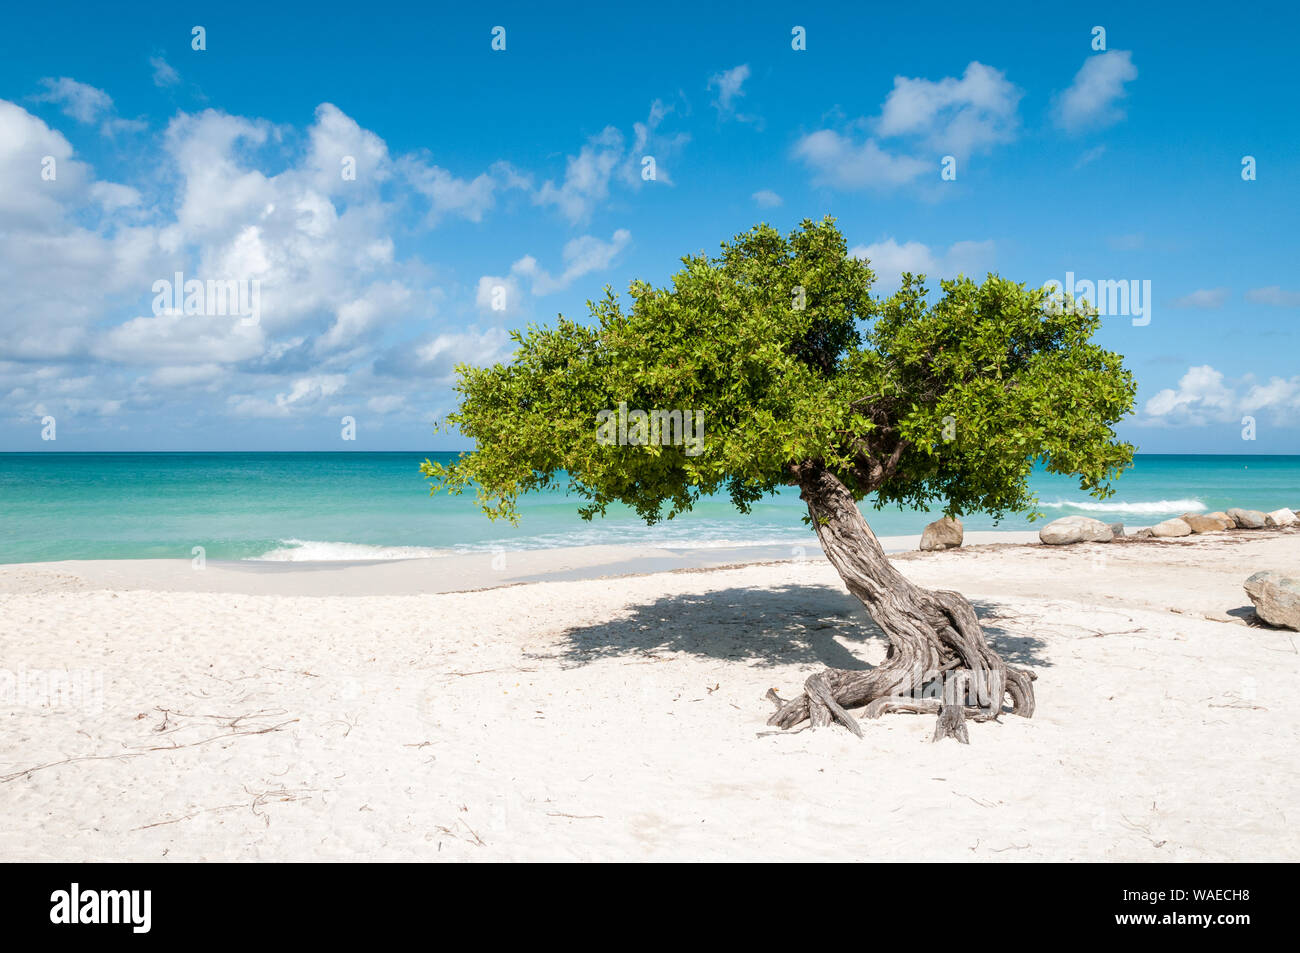 L'iconico divi divi tree sulla sabbia bianca di Eagle Beach all'isola caraibica di Aruba. Si tratta di una giornata soleggiata con cielo blu e nuvole bianche. Il turqui Foto Stock